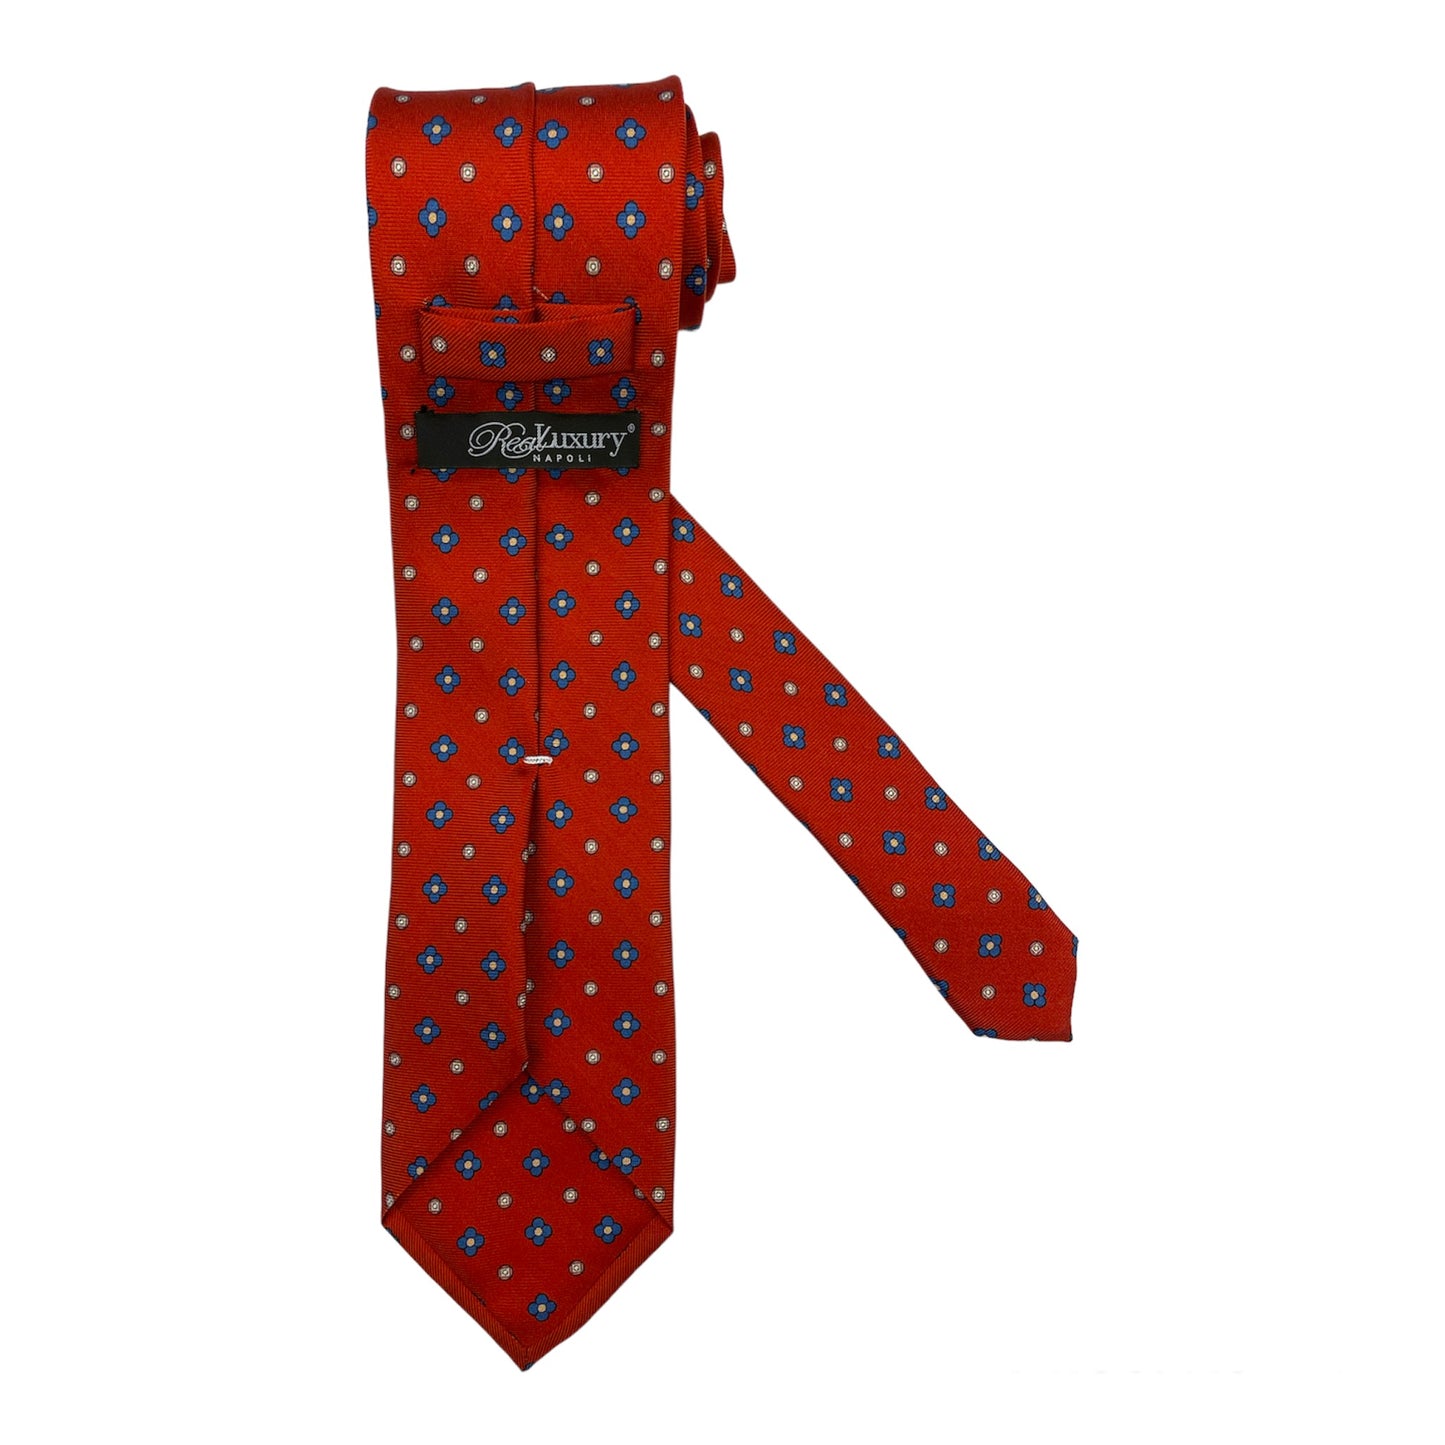 Cravatta seta rossa con fiori grandi bluette